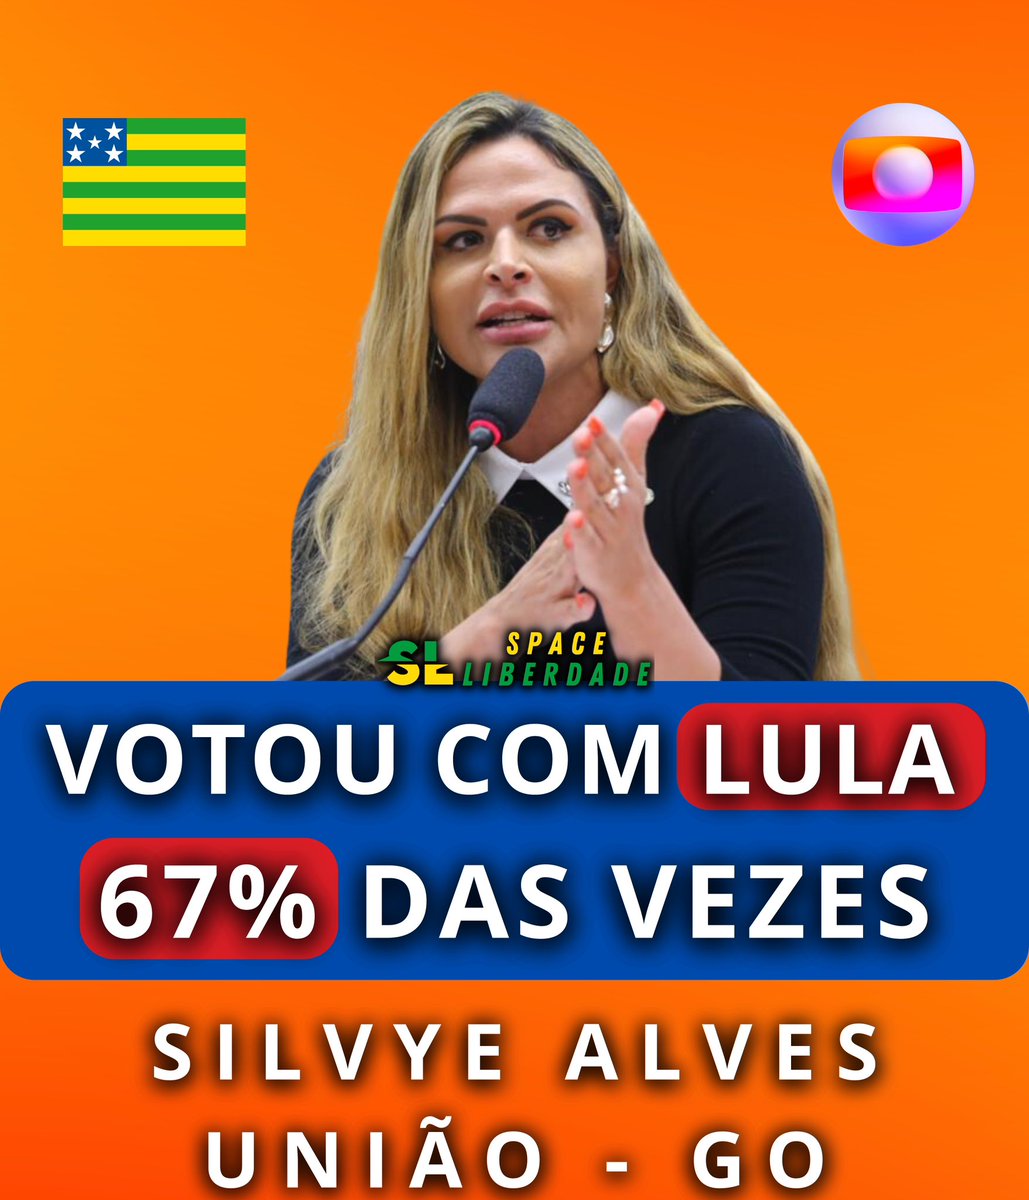 🚨EXPOSED -  A deputada Silvye Alves, que foi eleita pela direita, votou com o Governo Lula em 67% das vezes na Câmara dos Deputados!

 Ela está acusando a direita de 'fake news' por dizermos que votou a favor da urgência do PL da Globo

Siga a thread e saiba a verdade🧶